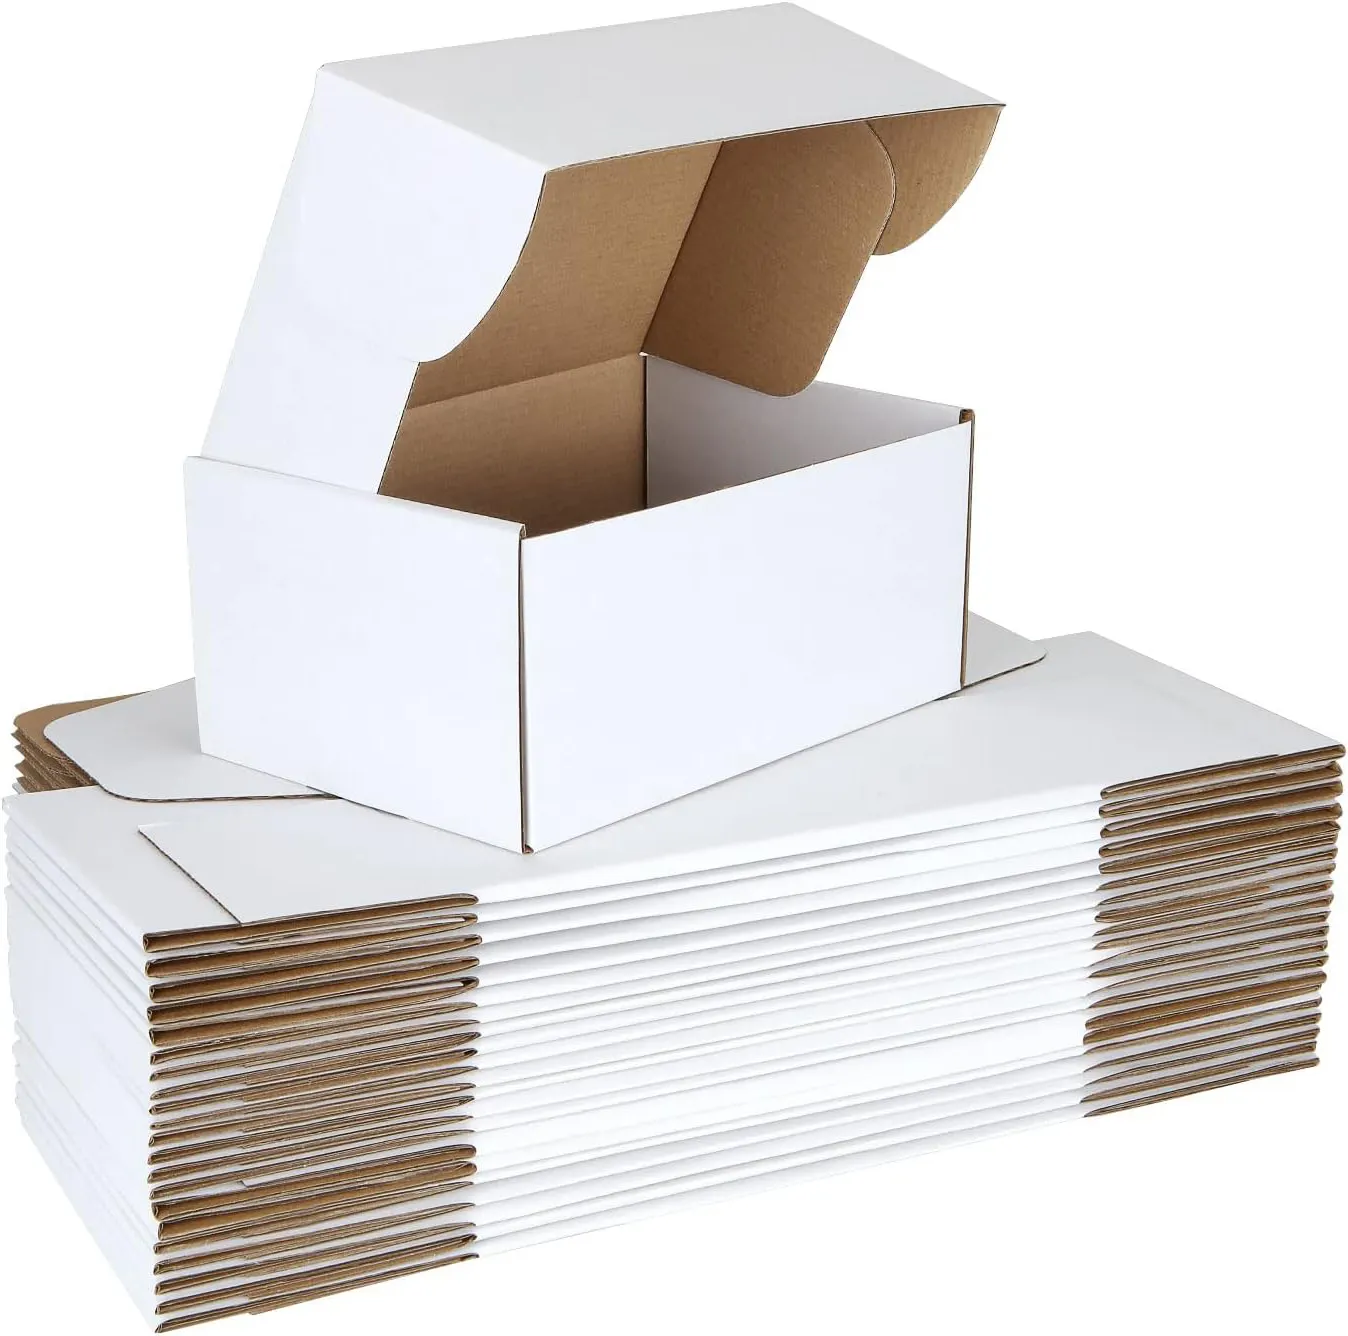 Kotak surat bergelombang kustom kertas Kraft merah muda untuk kotak pengiriman pakaian kotak surat khusus dengan kemasan logo